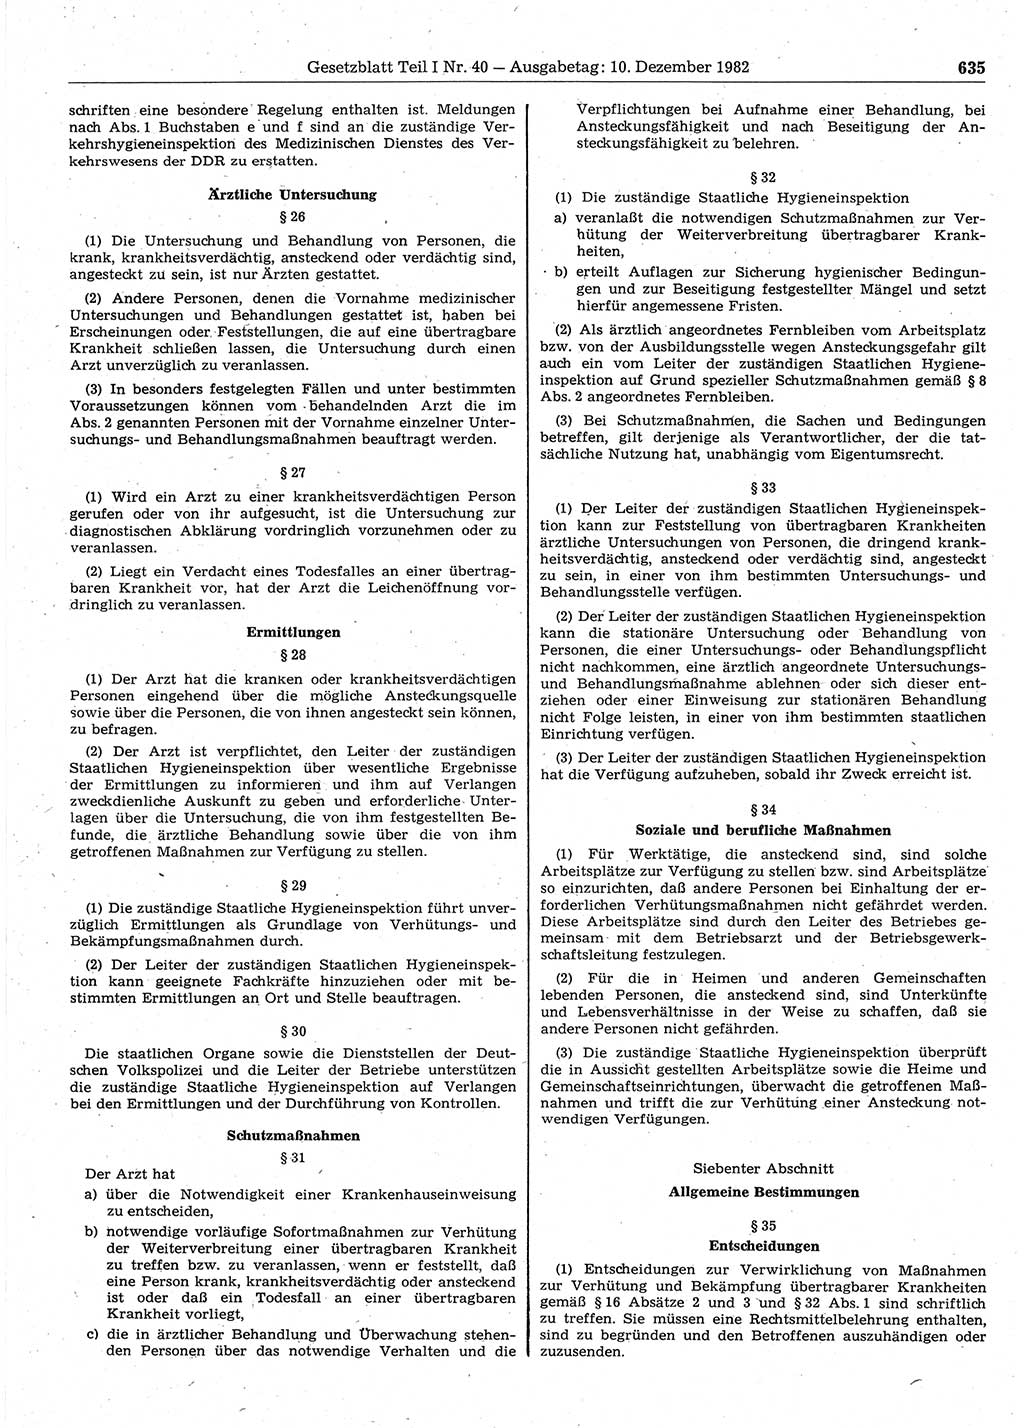 Gesetzblatt (GBl.) der Deutschen Demokratischen Republik (DDR) Teil Ⅰ 1982, Seite 635 (GBl. DDR Ⅰ 1982, S. 635)